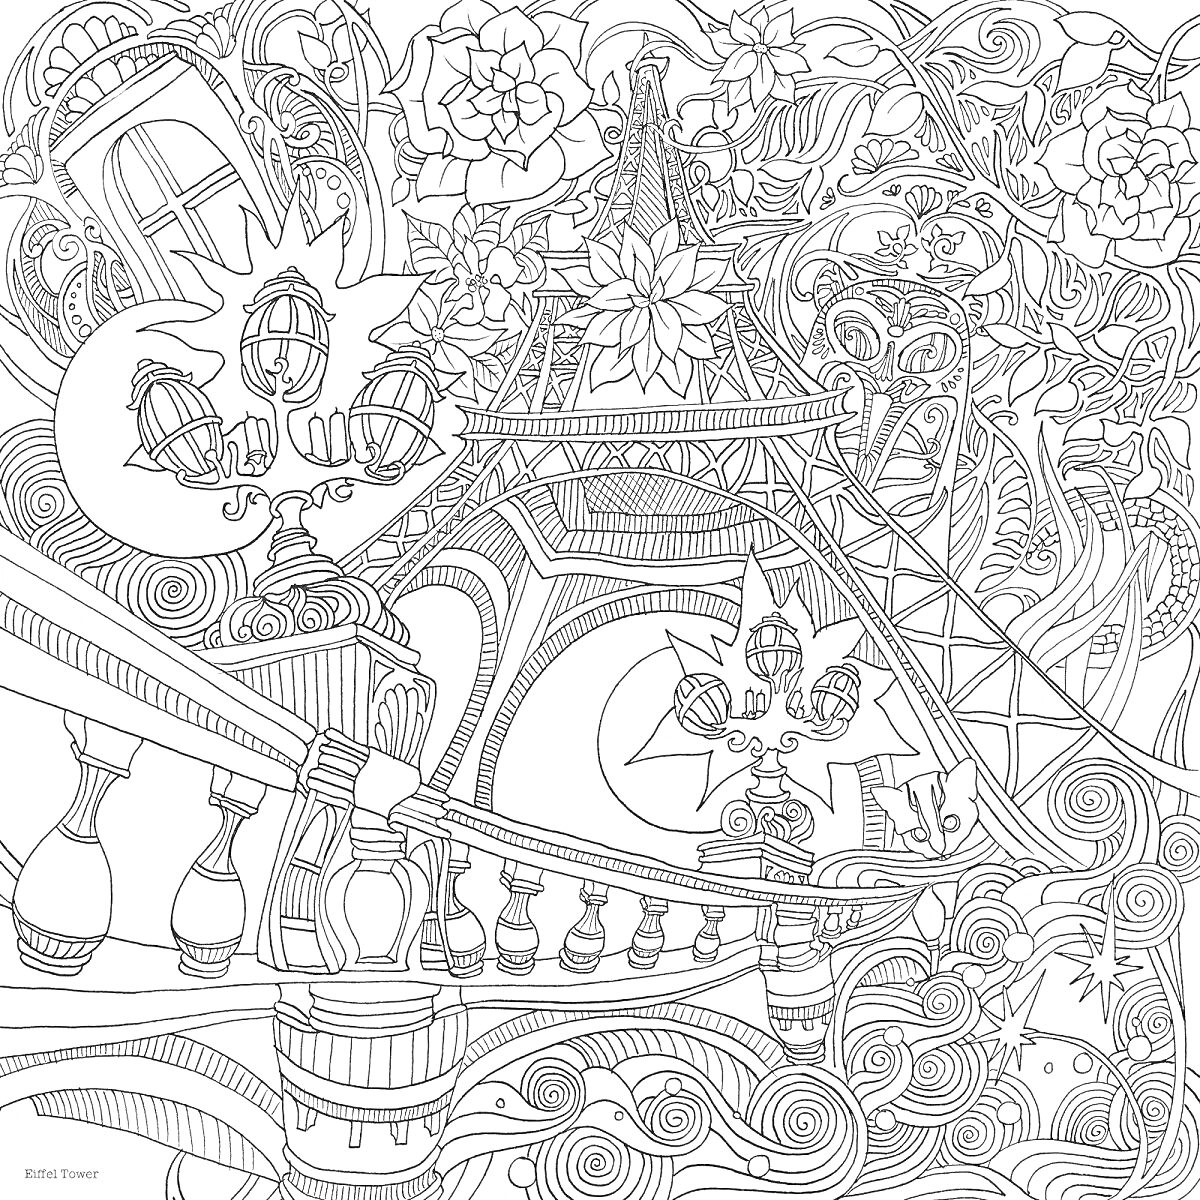 Раскраска Эйфелева башня и цветы на балконе с винтажными фонарями